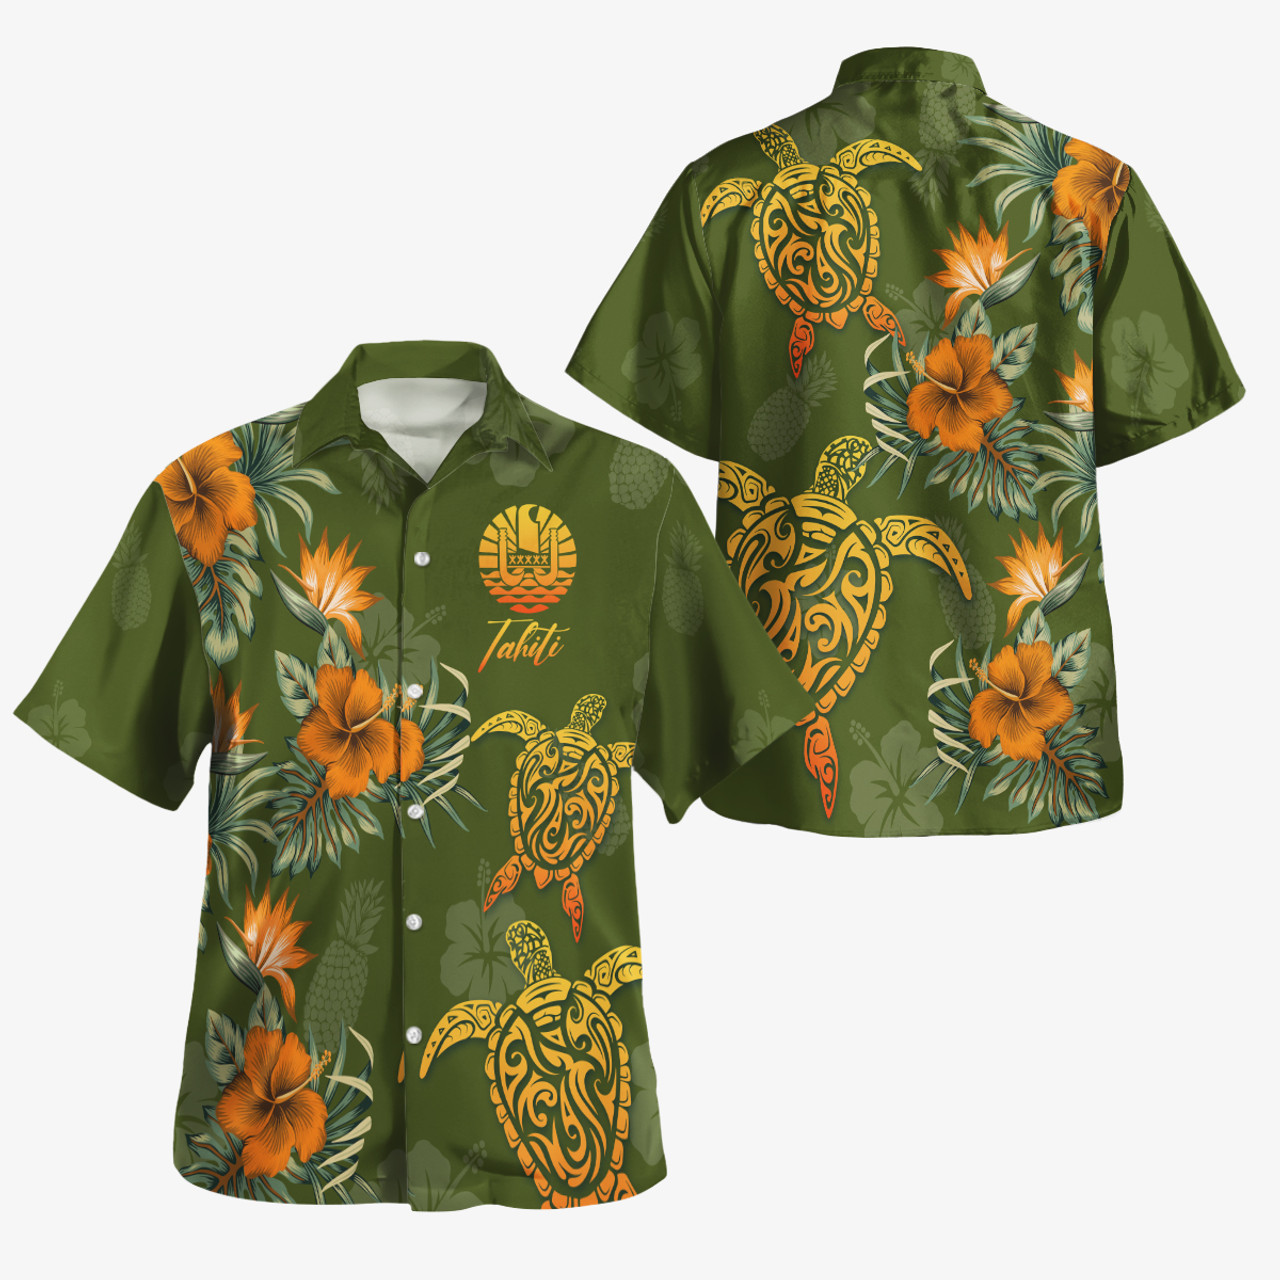 Tahiti Custom Personalised Hawaiian Shirt Polynesian Tropical Summer